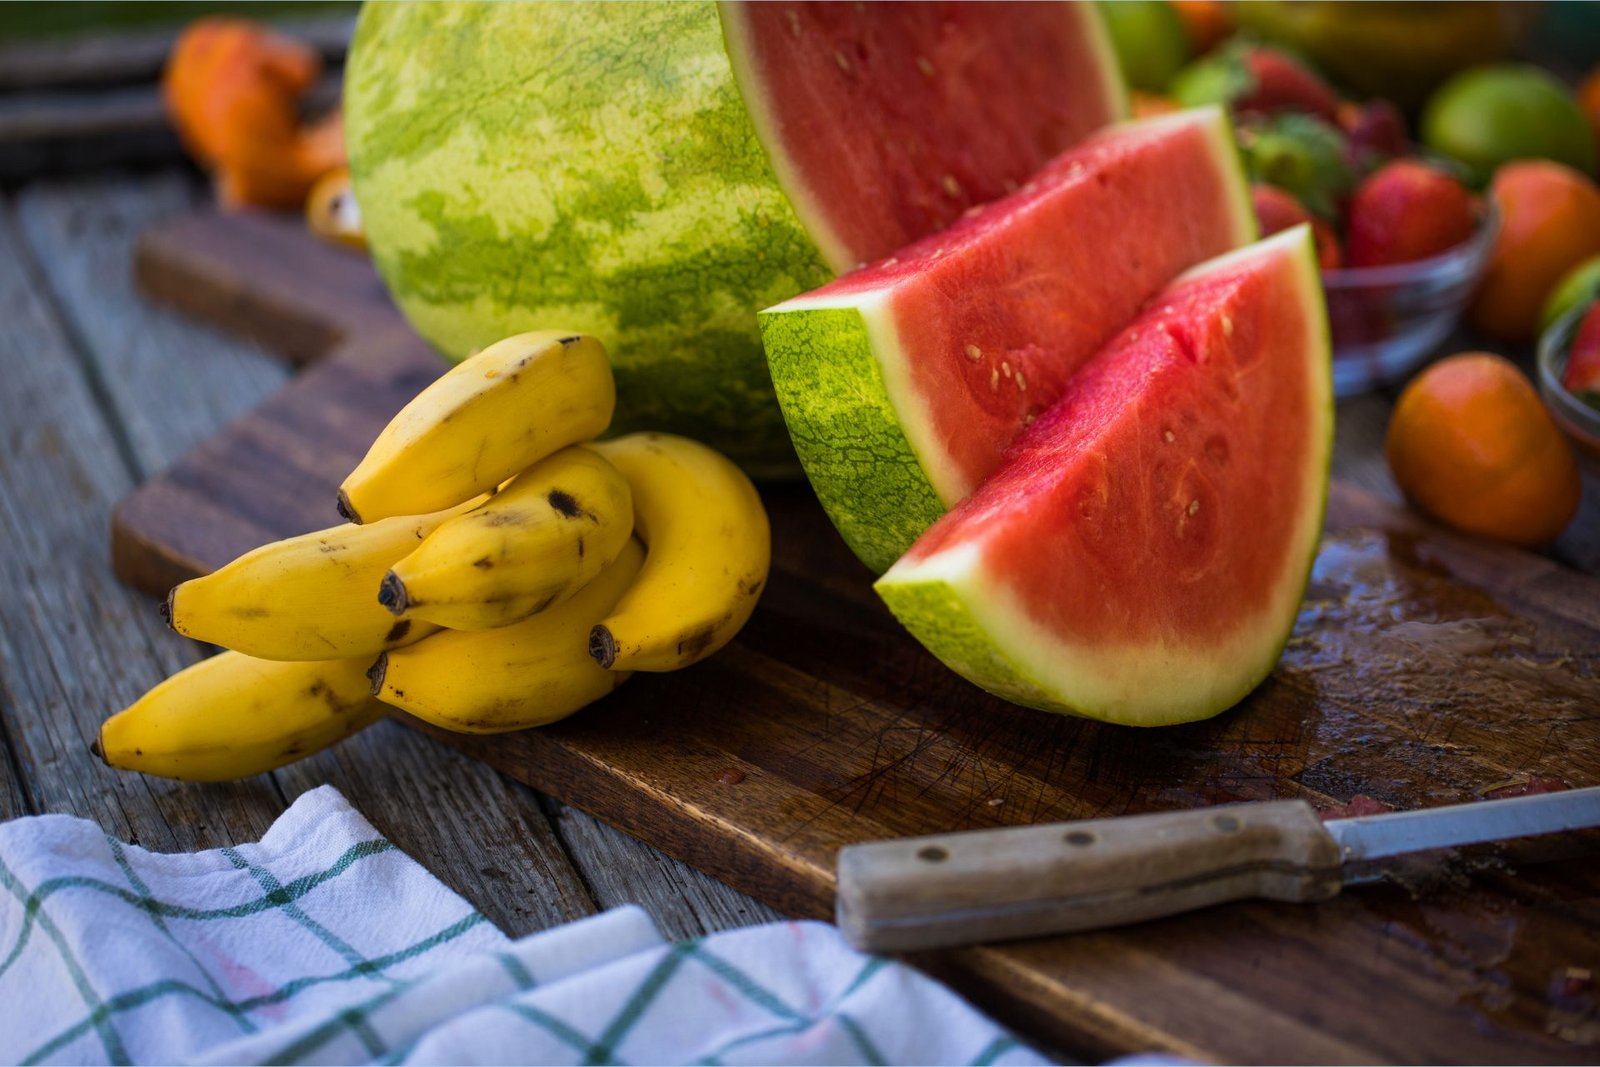 Des bananes riches en potassium sont posées sur une planche à découper à côté d'une pastèque coupée en tranches et riche en L-citrulline.